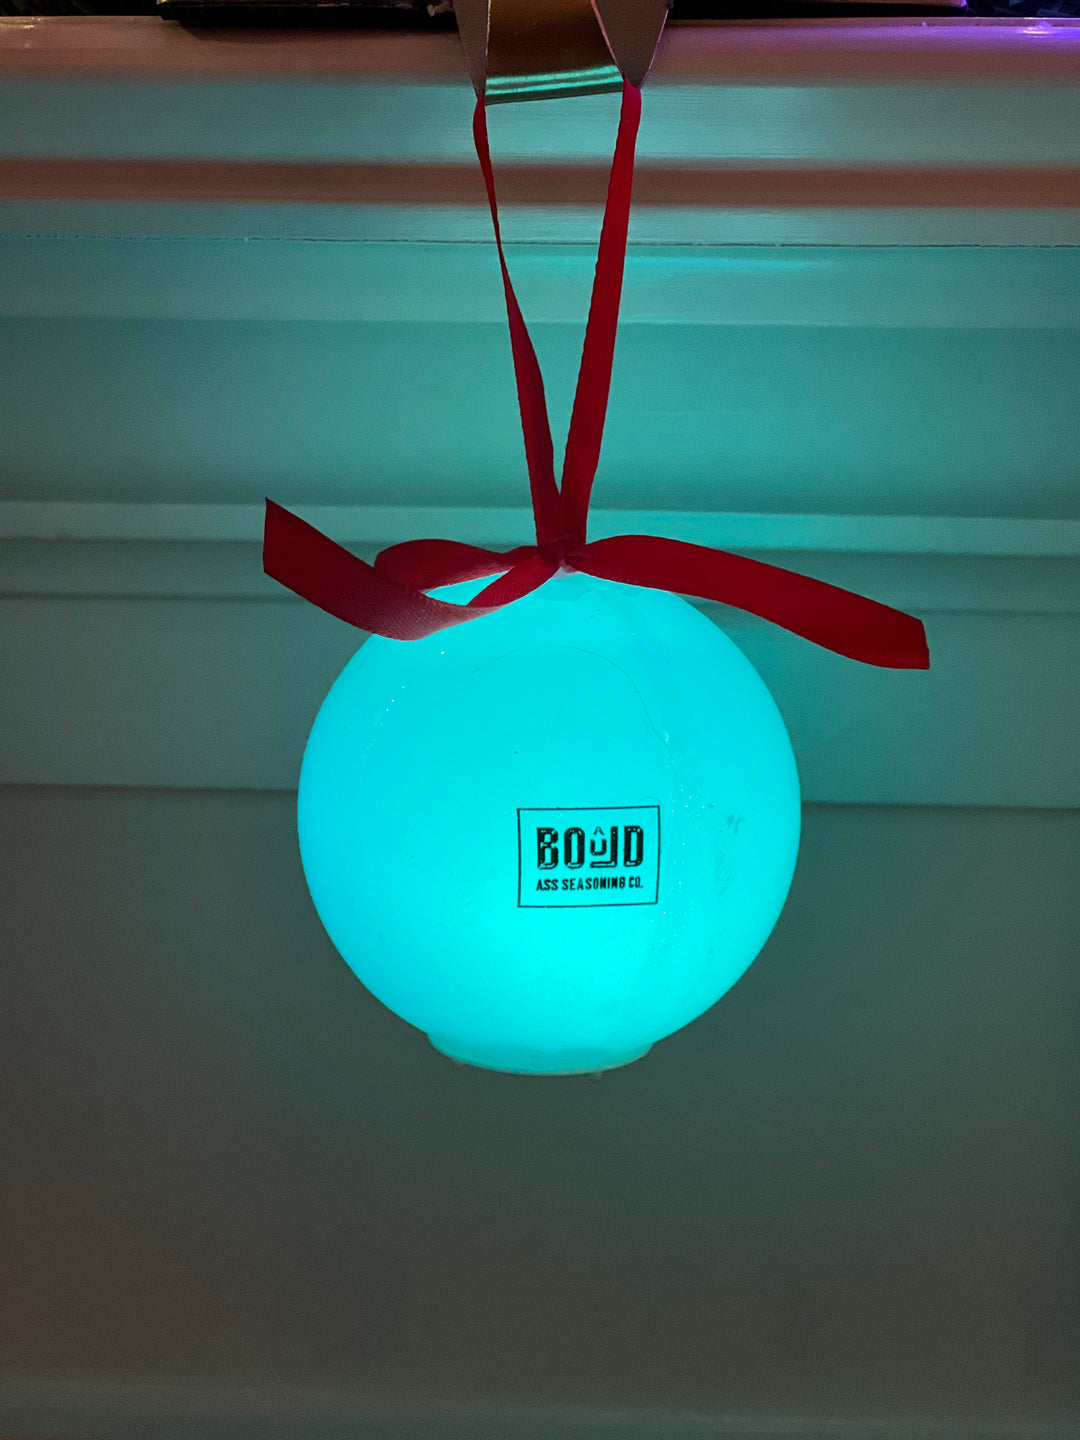 BOûLD Ass LED Ornament